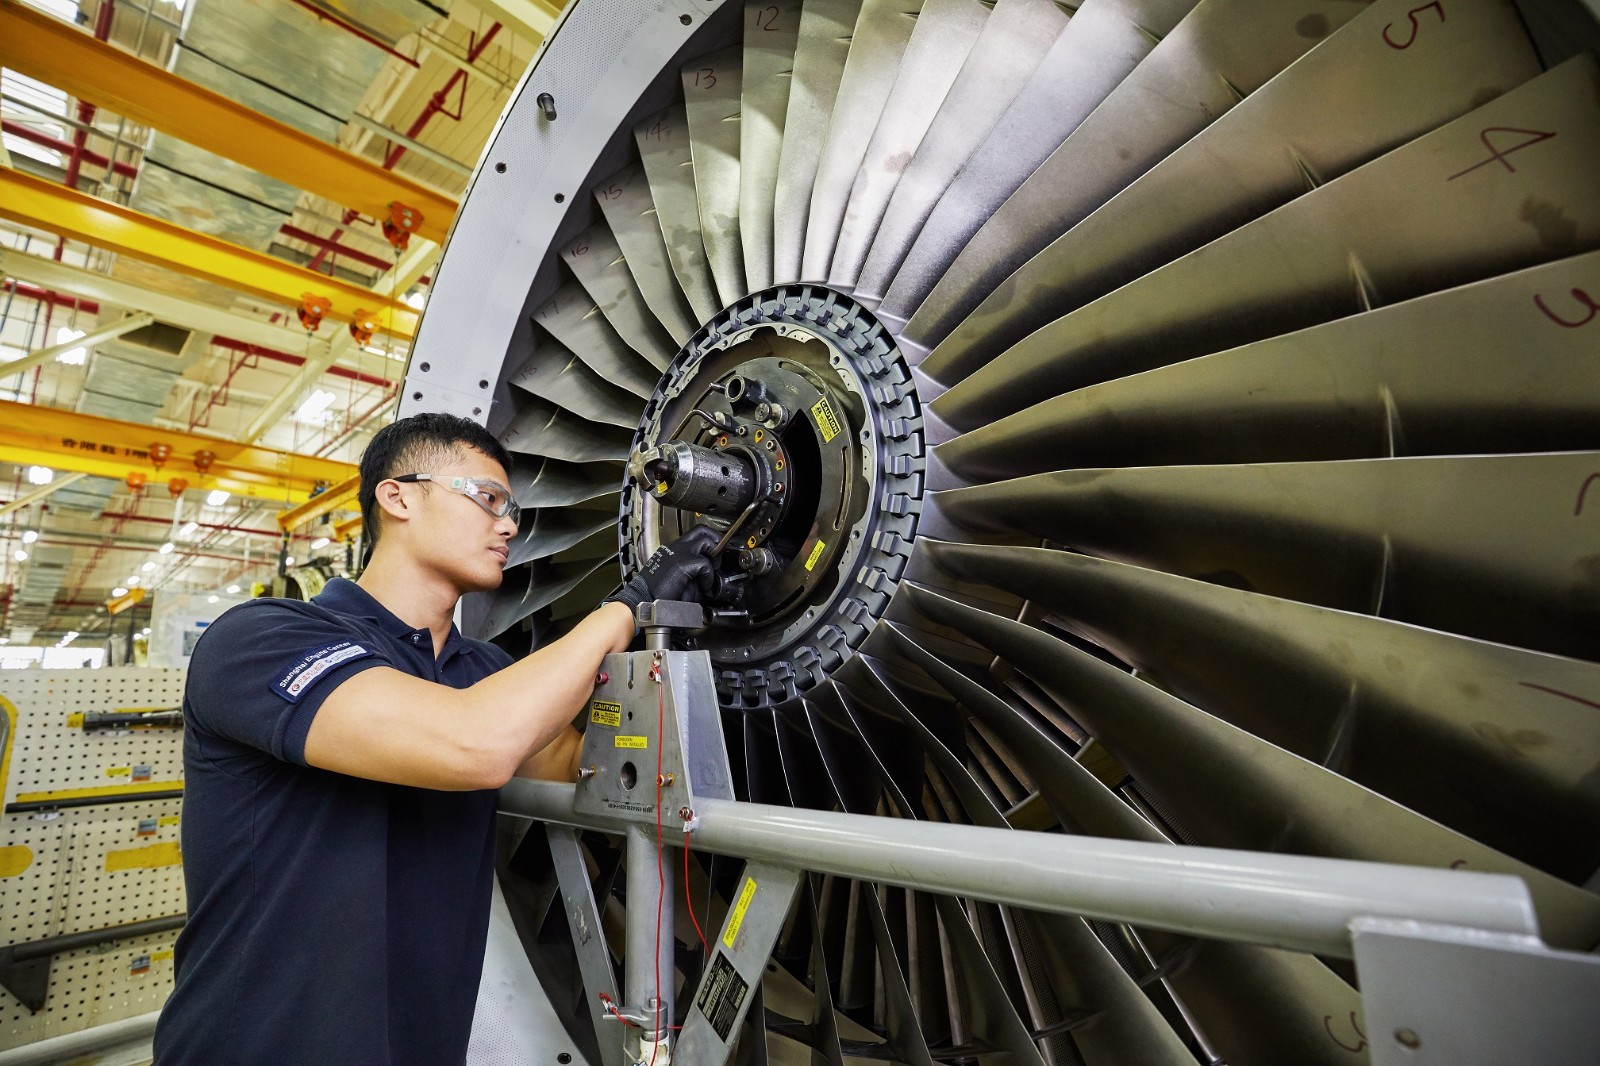 2007年11月6日,上海普惠飞机发动机维修有限公司由中国东方航空公司与